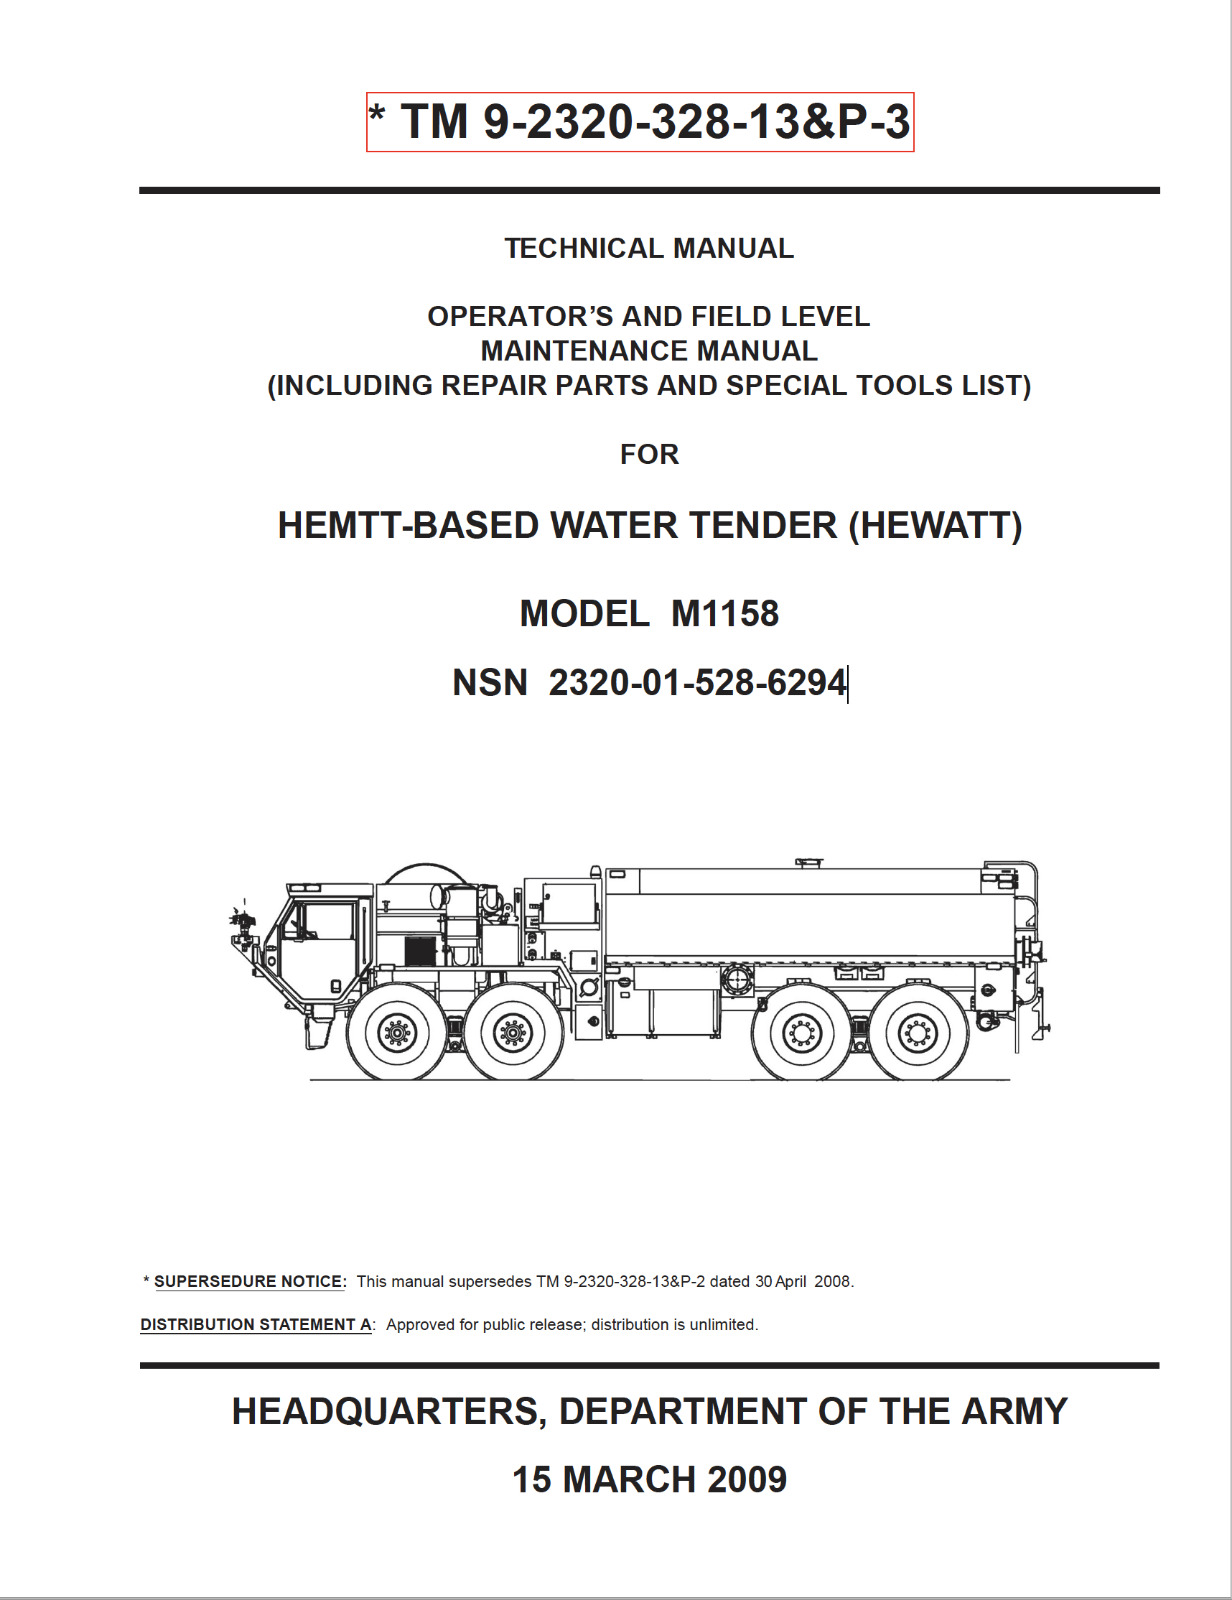 844 page 2012 TM 9-2320-328-13&P-3 M1158 WATER TENDER HEWATT Truck Manual on CD